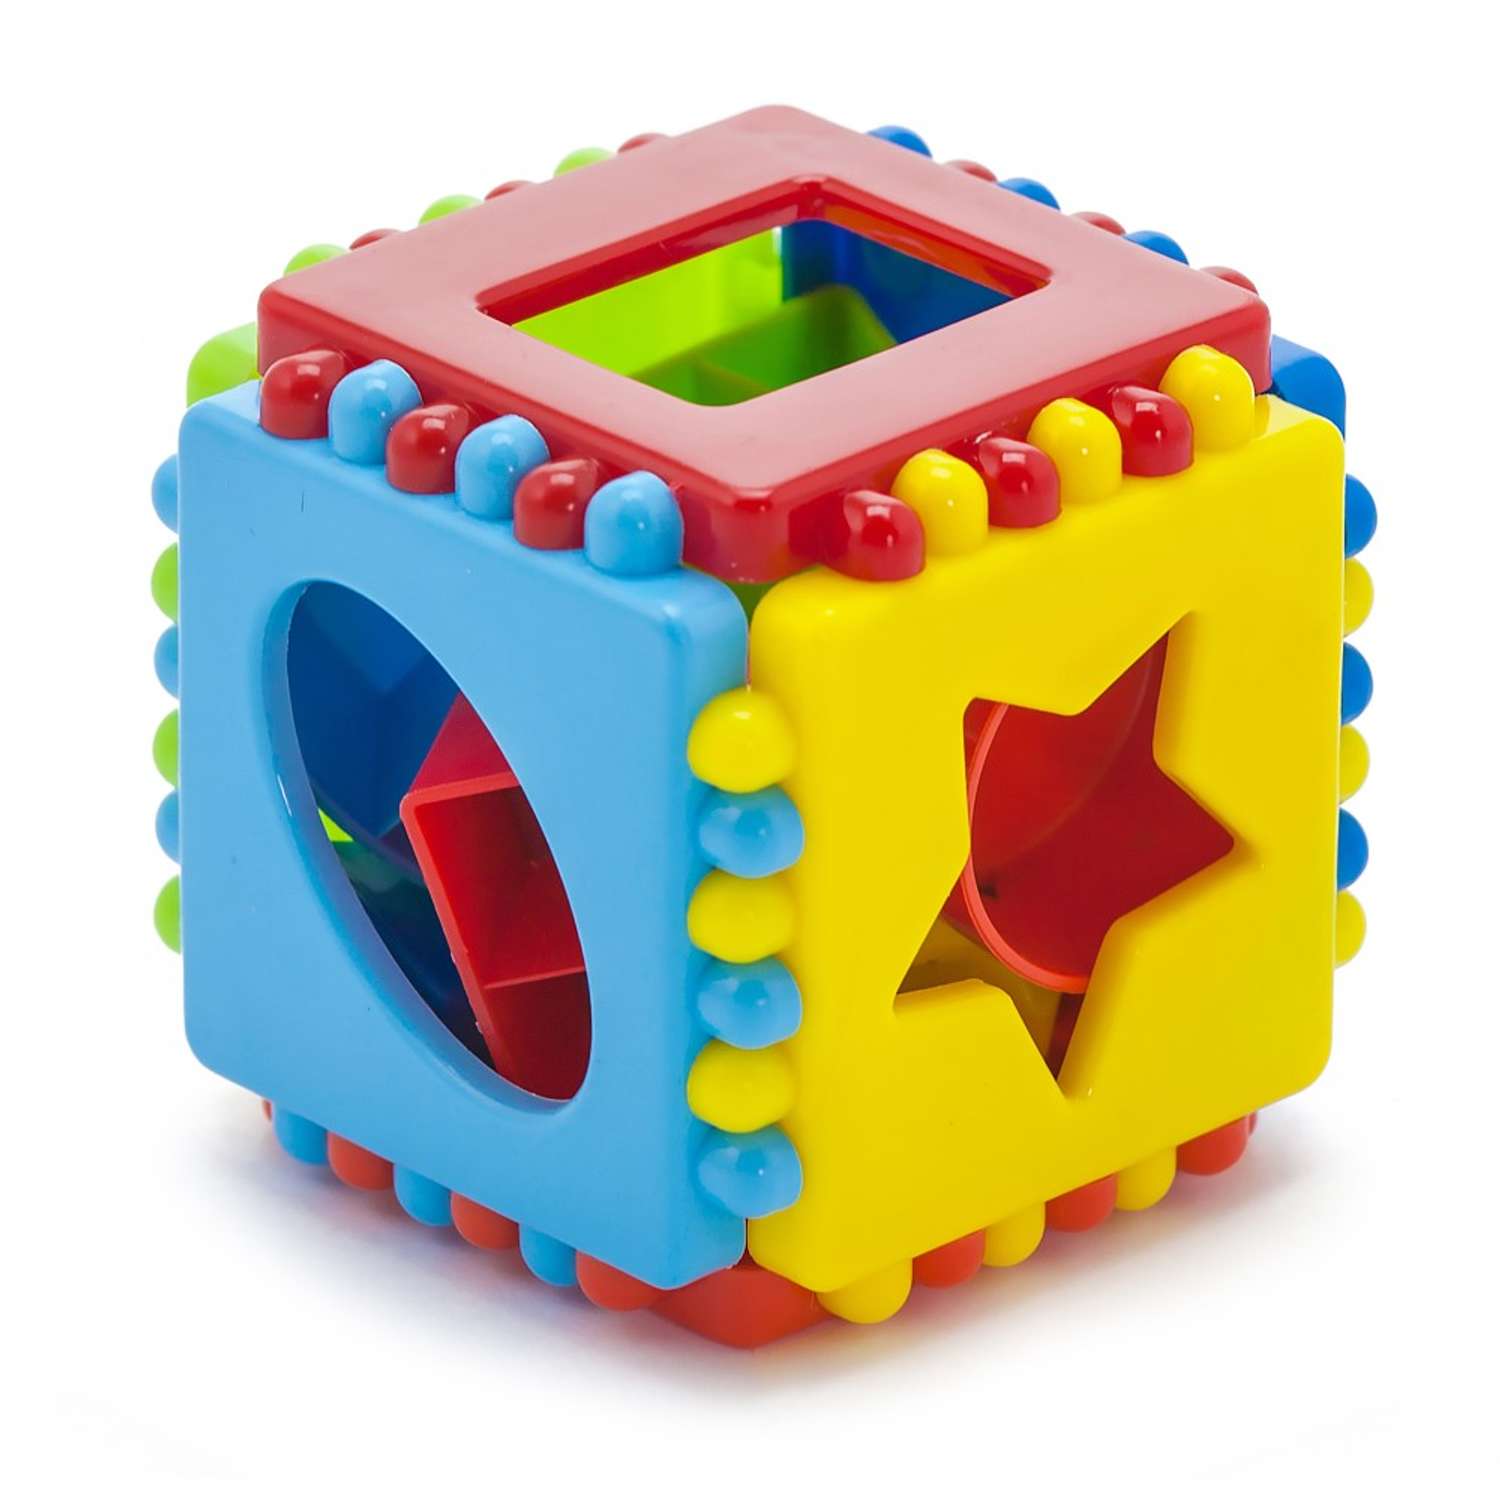 Развивающие игрушки БИПЛАНТ конструктор для малышей Кноп-Кнопыч 114 деталей + Сортер кубик малый + Команда КВА - фото 11